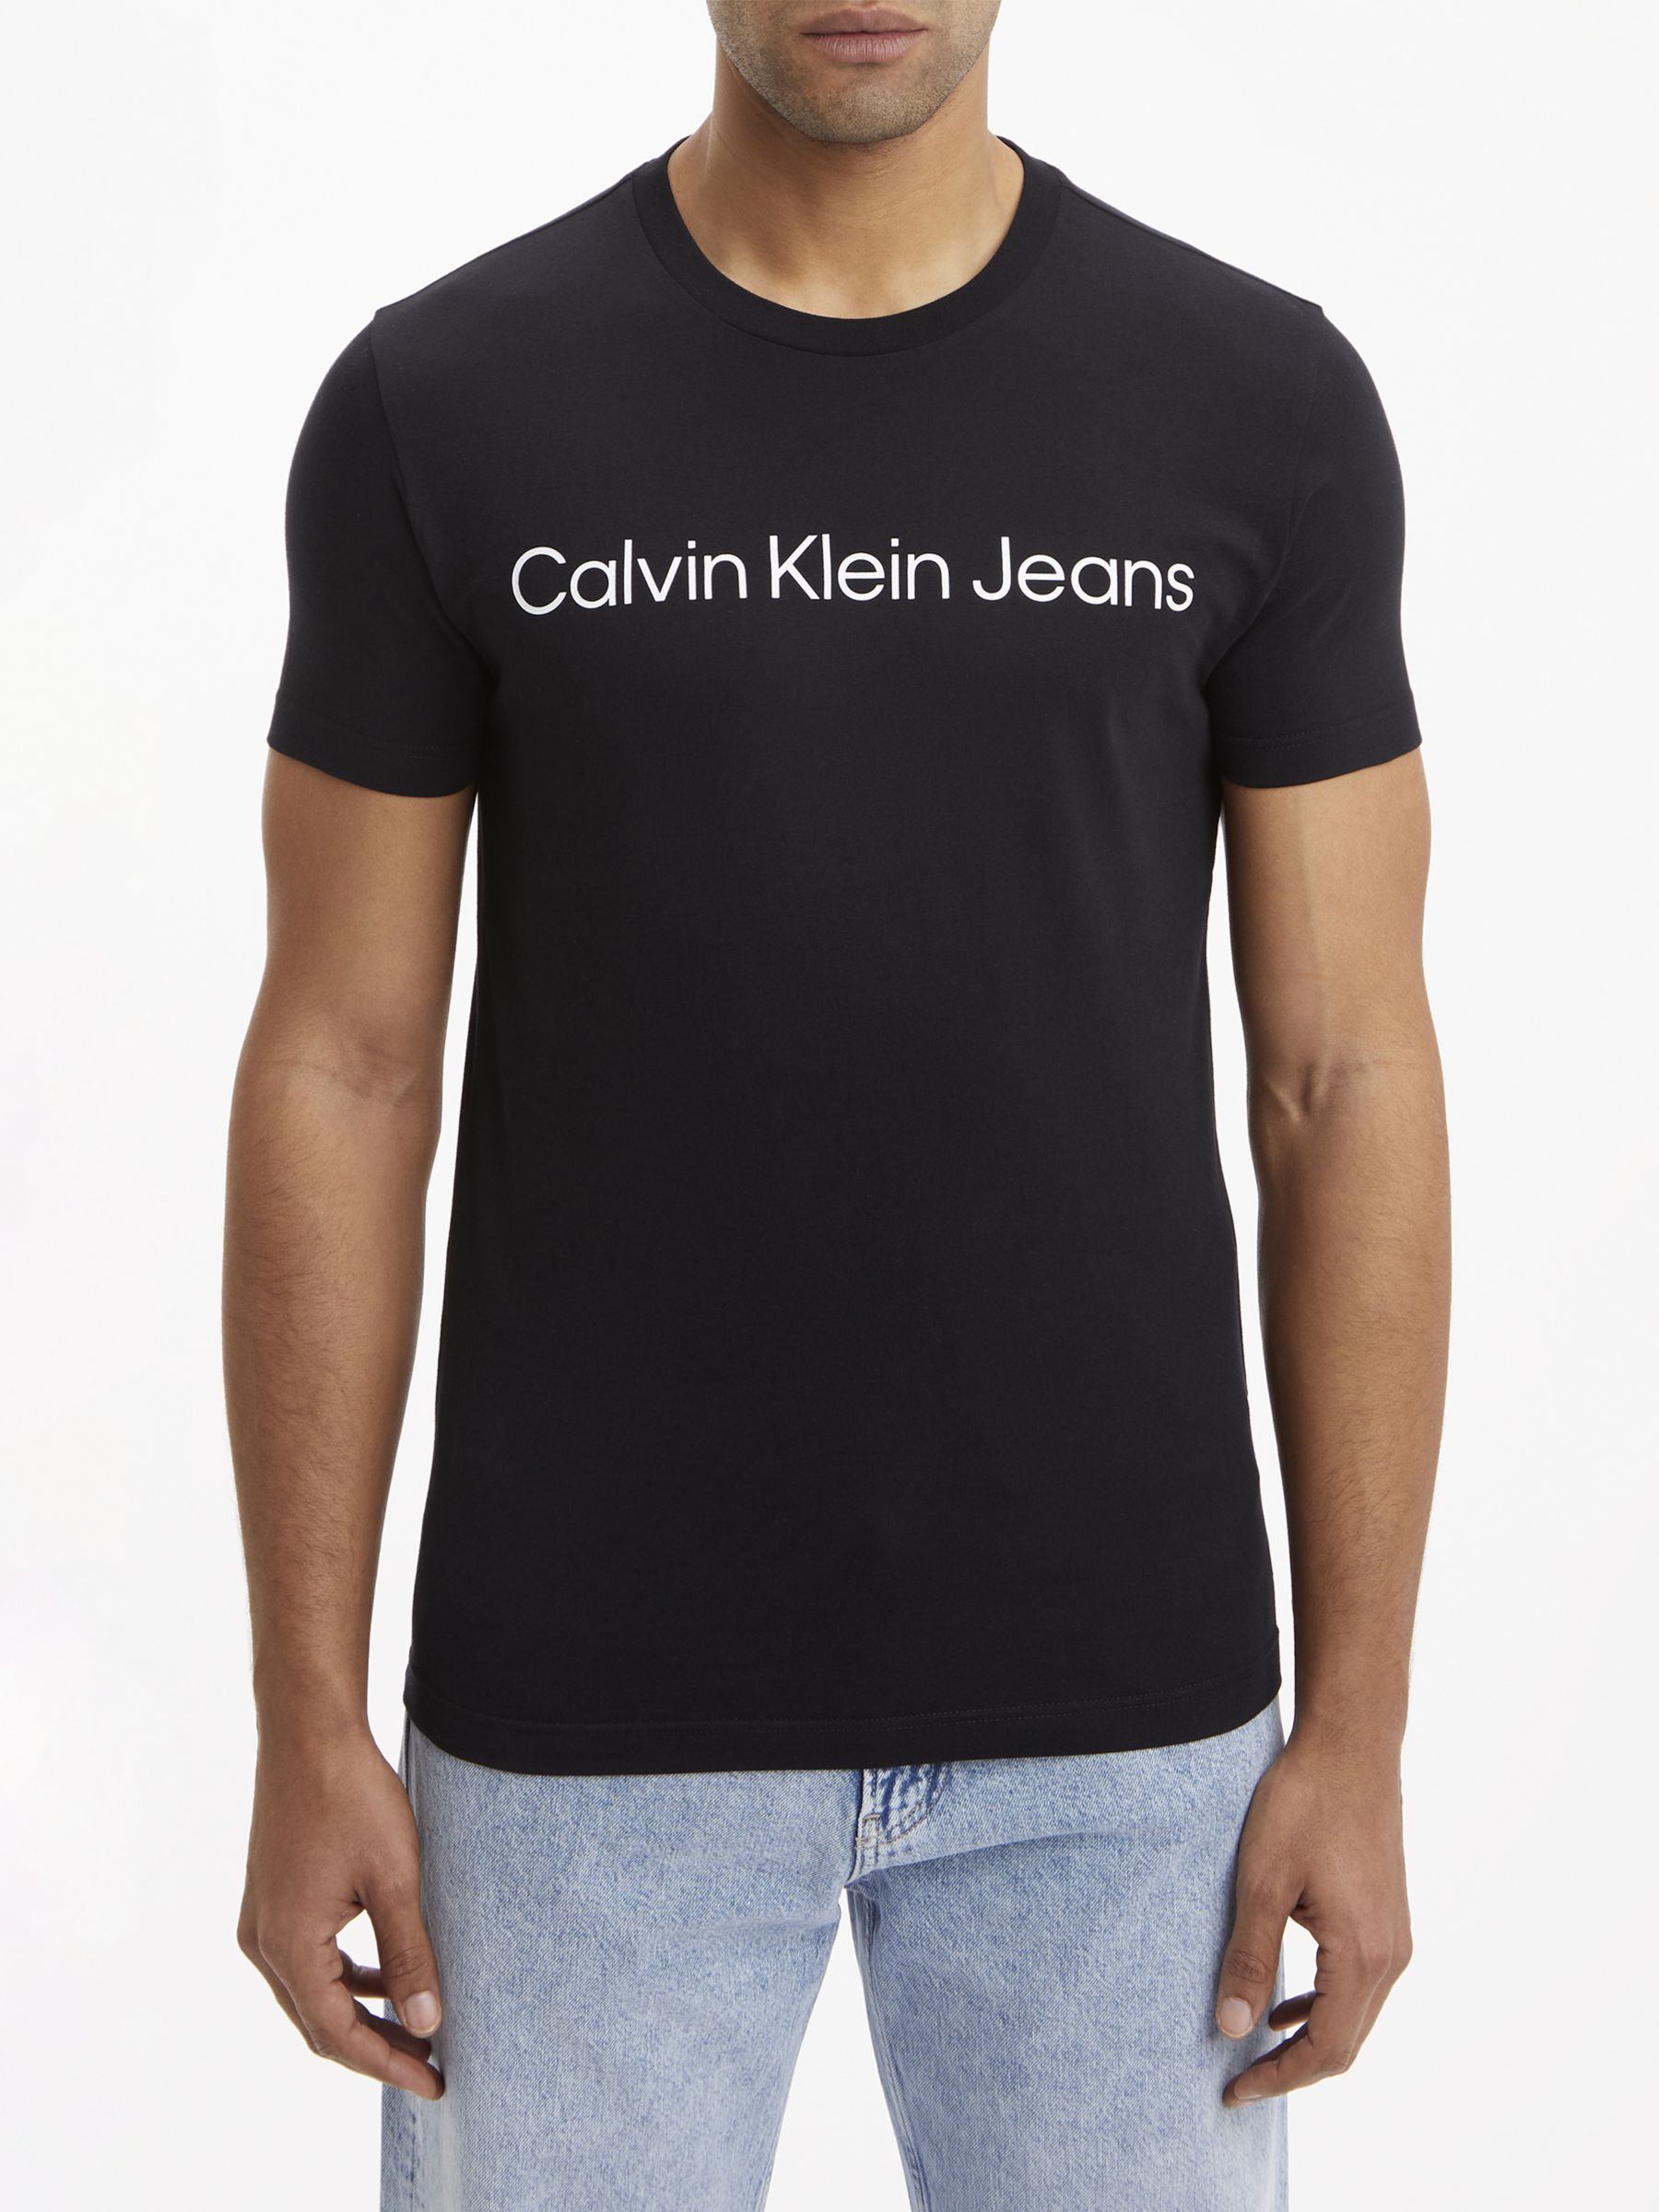 Calvin Klein Jeans Core Logo T-Shirt, Ck Black, XS